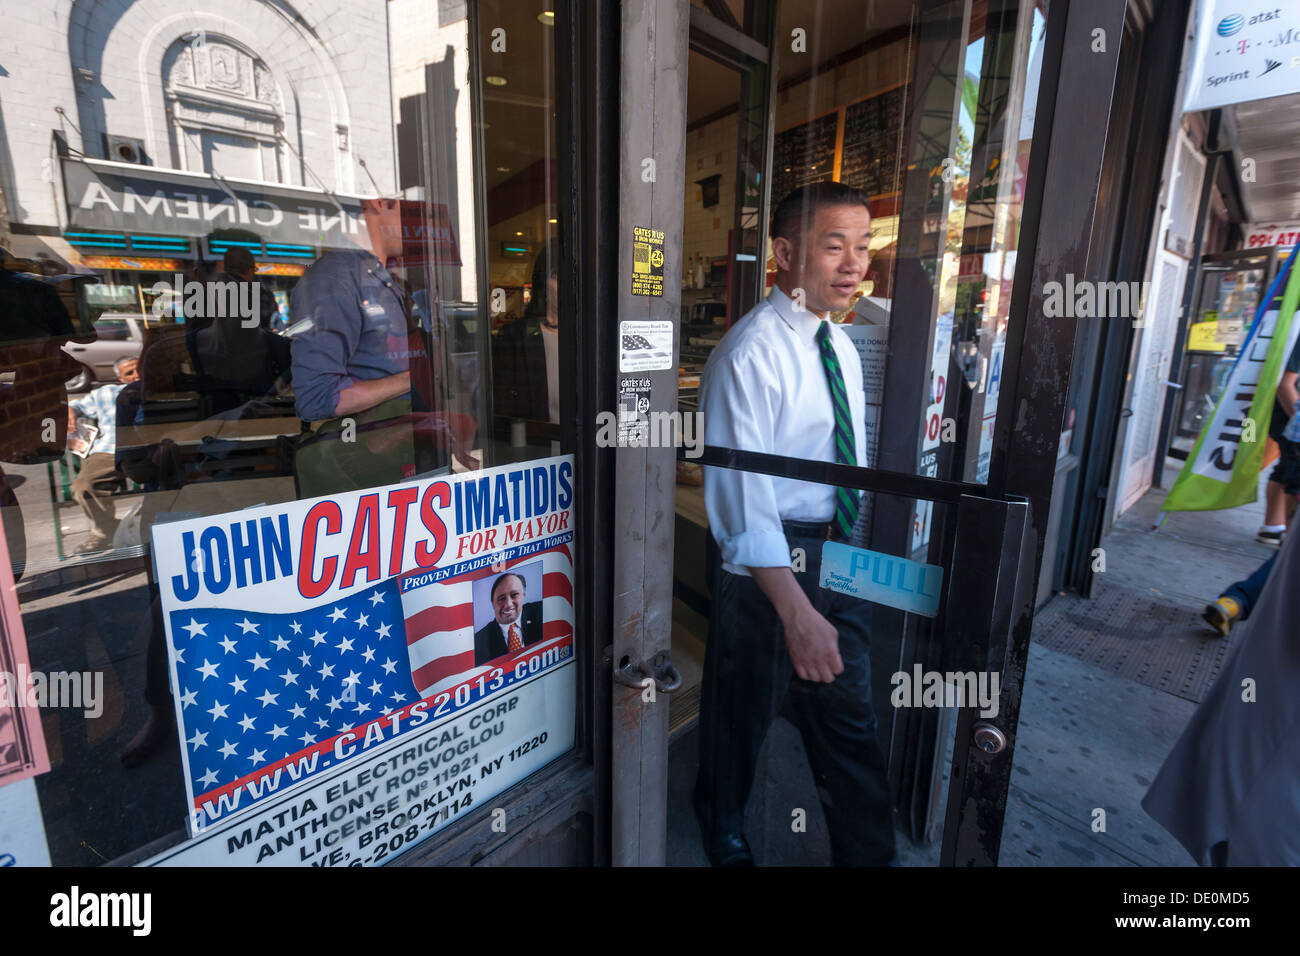 NYC Comptroller und Mayoral Kandidat John Liu besucht arabisch-amerikanische Unternehmen Stockfoto